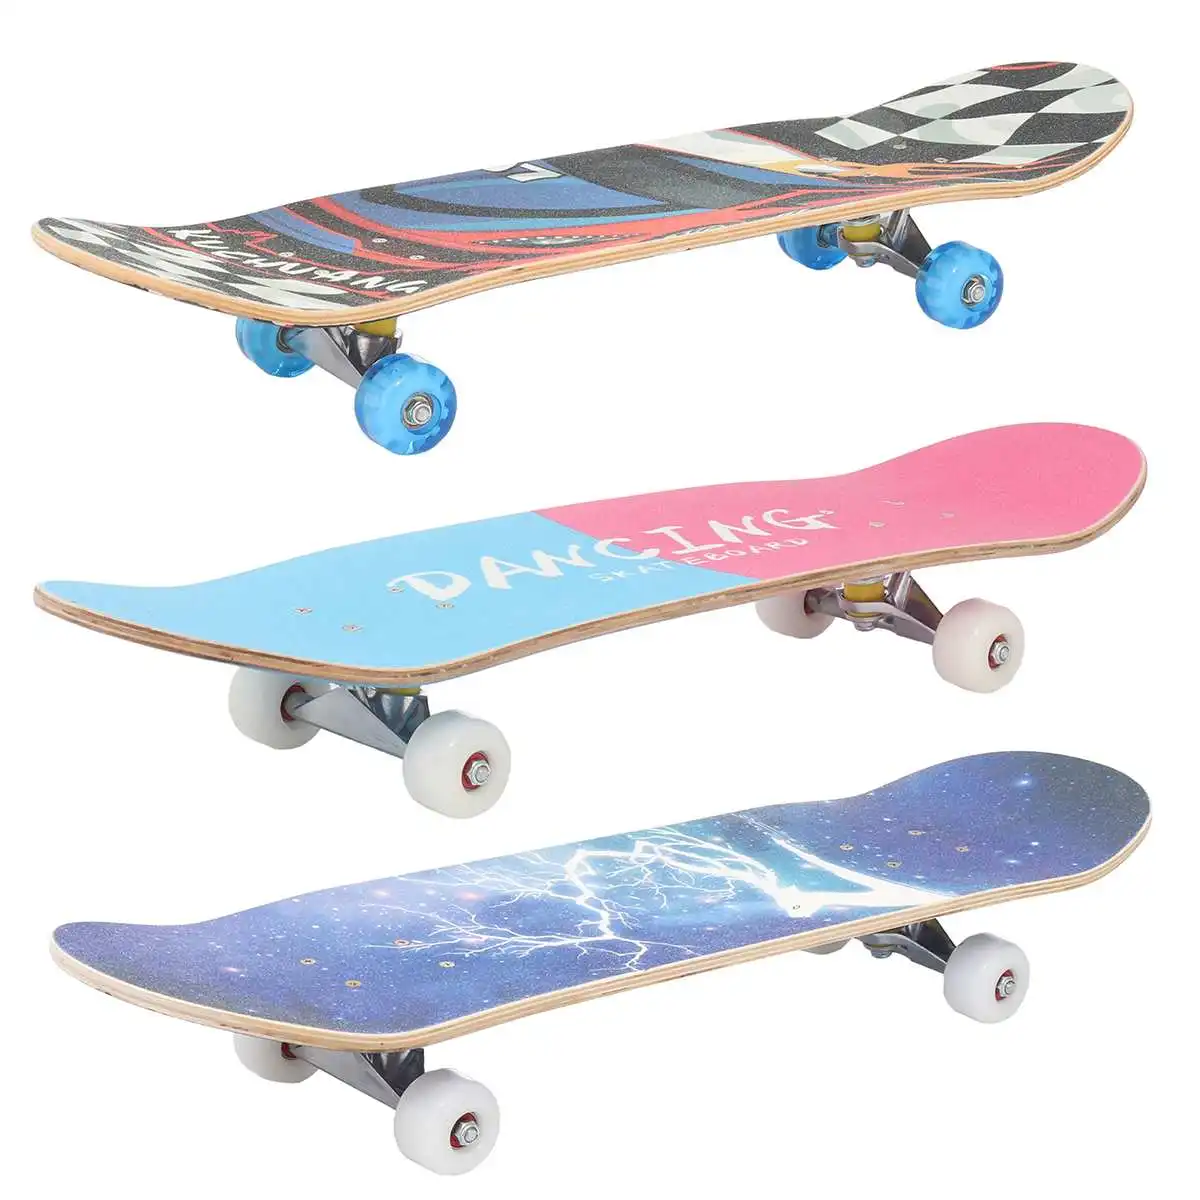 

Skateboard Double Rocker 80cm Boys Girls Mini Longboard Complete Teenagers Skate Board Maple Deck With Bearings Wheels